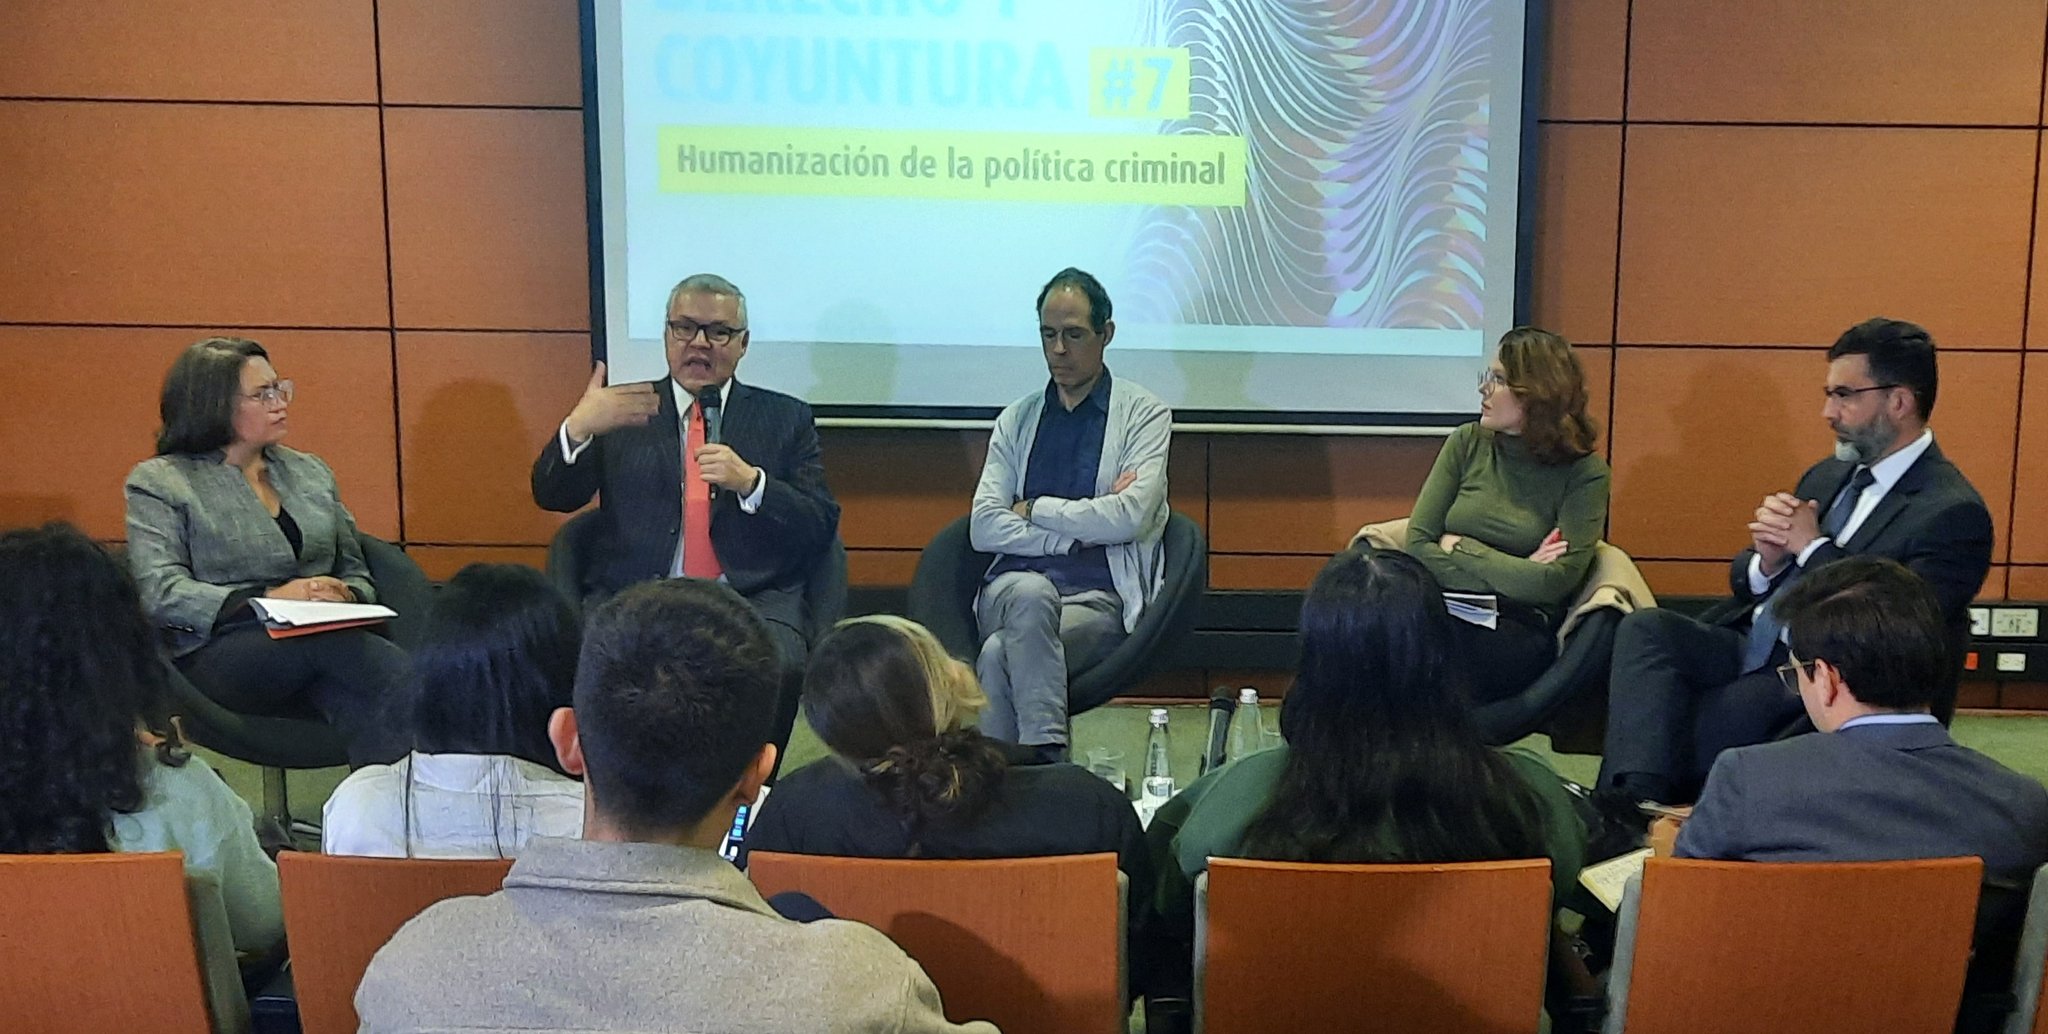 La Reforma penal y de humanización fueron debatidas por la Academia: conclusiones de la jornada